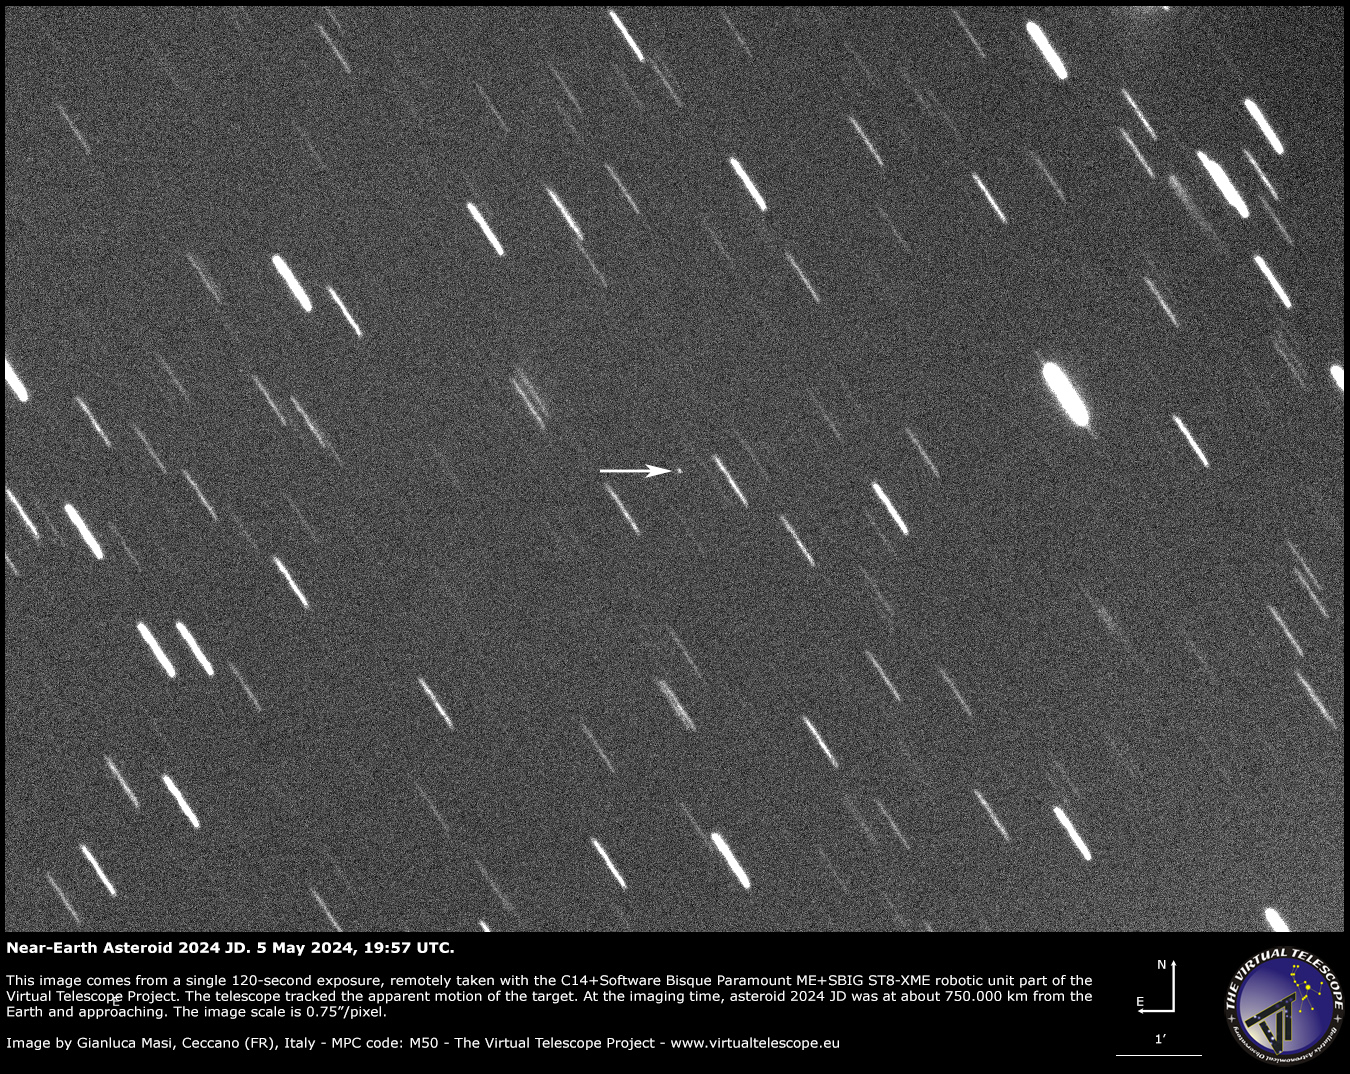 Astéroïde géocroiseur 2024 JD Rencontre très rapprochée : Image – 5 mai 2024.